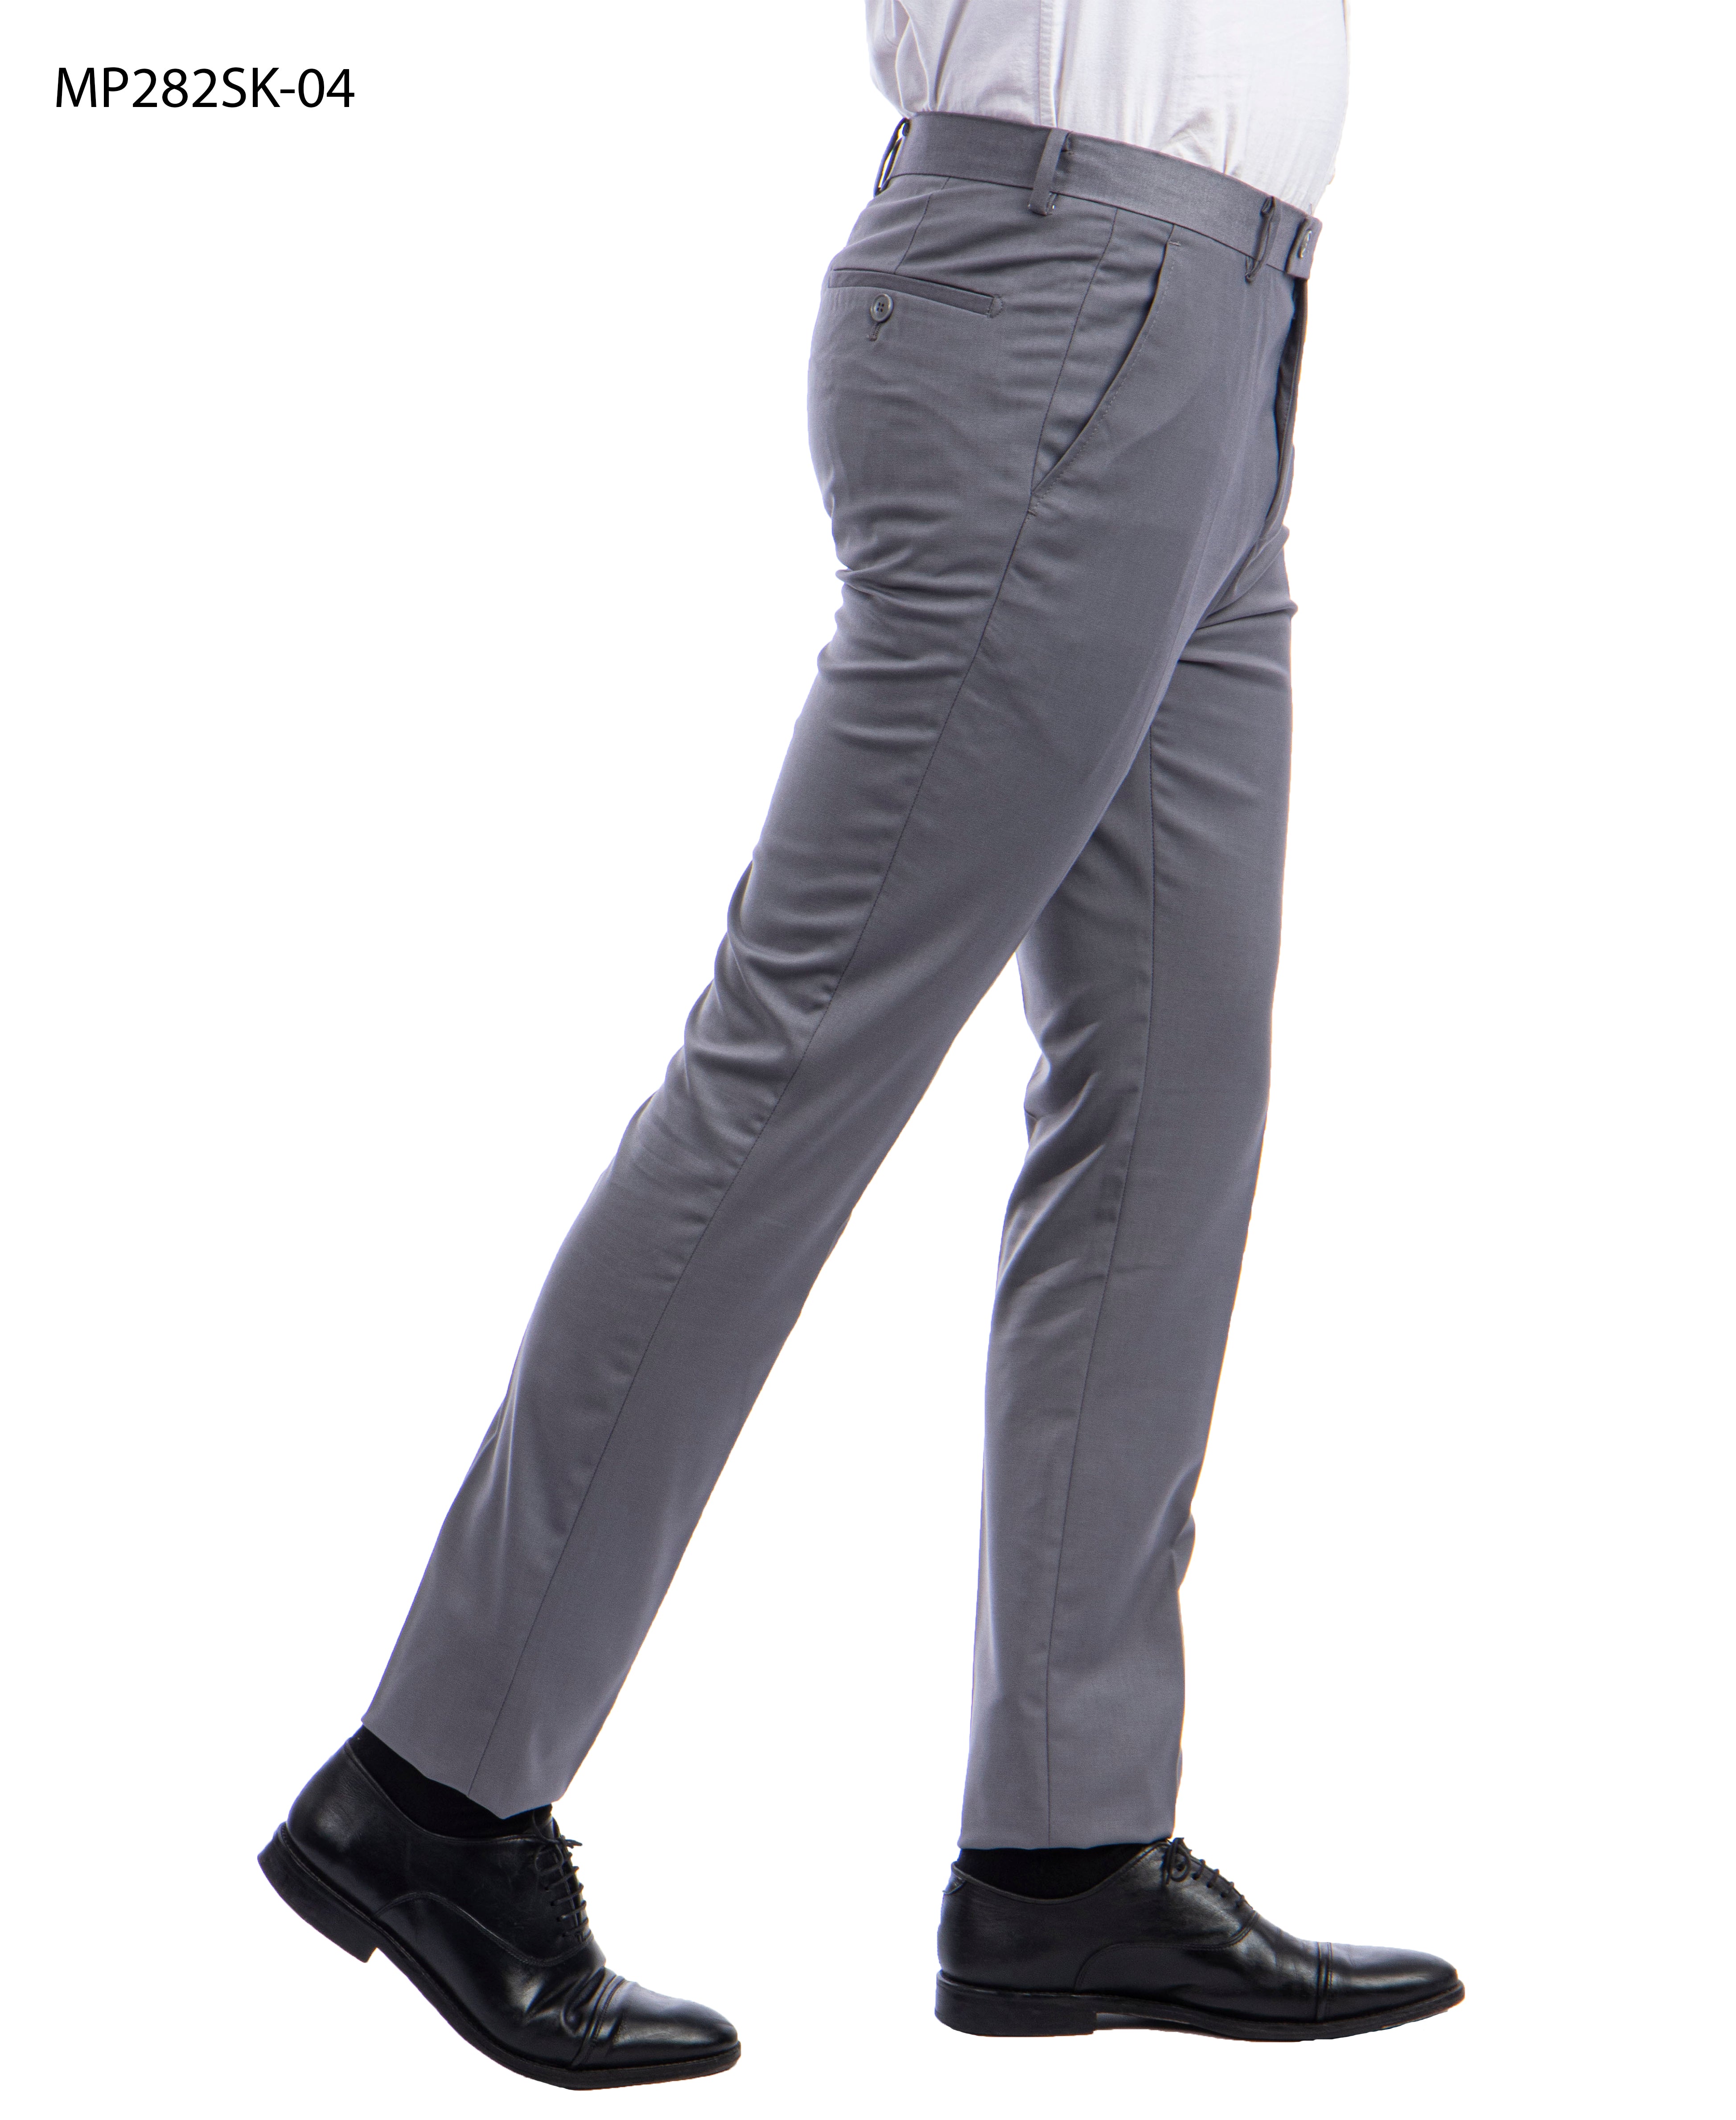 Gray stretch suit pants